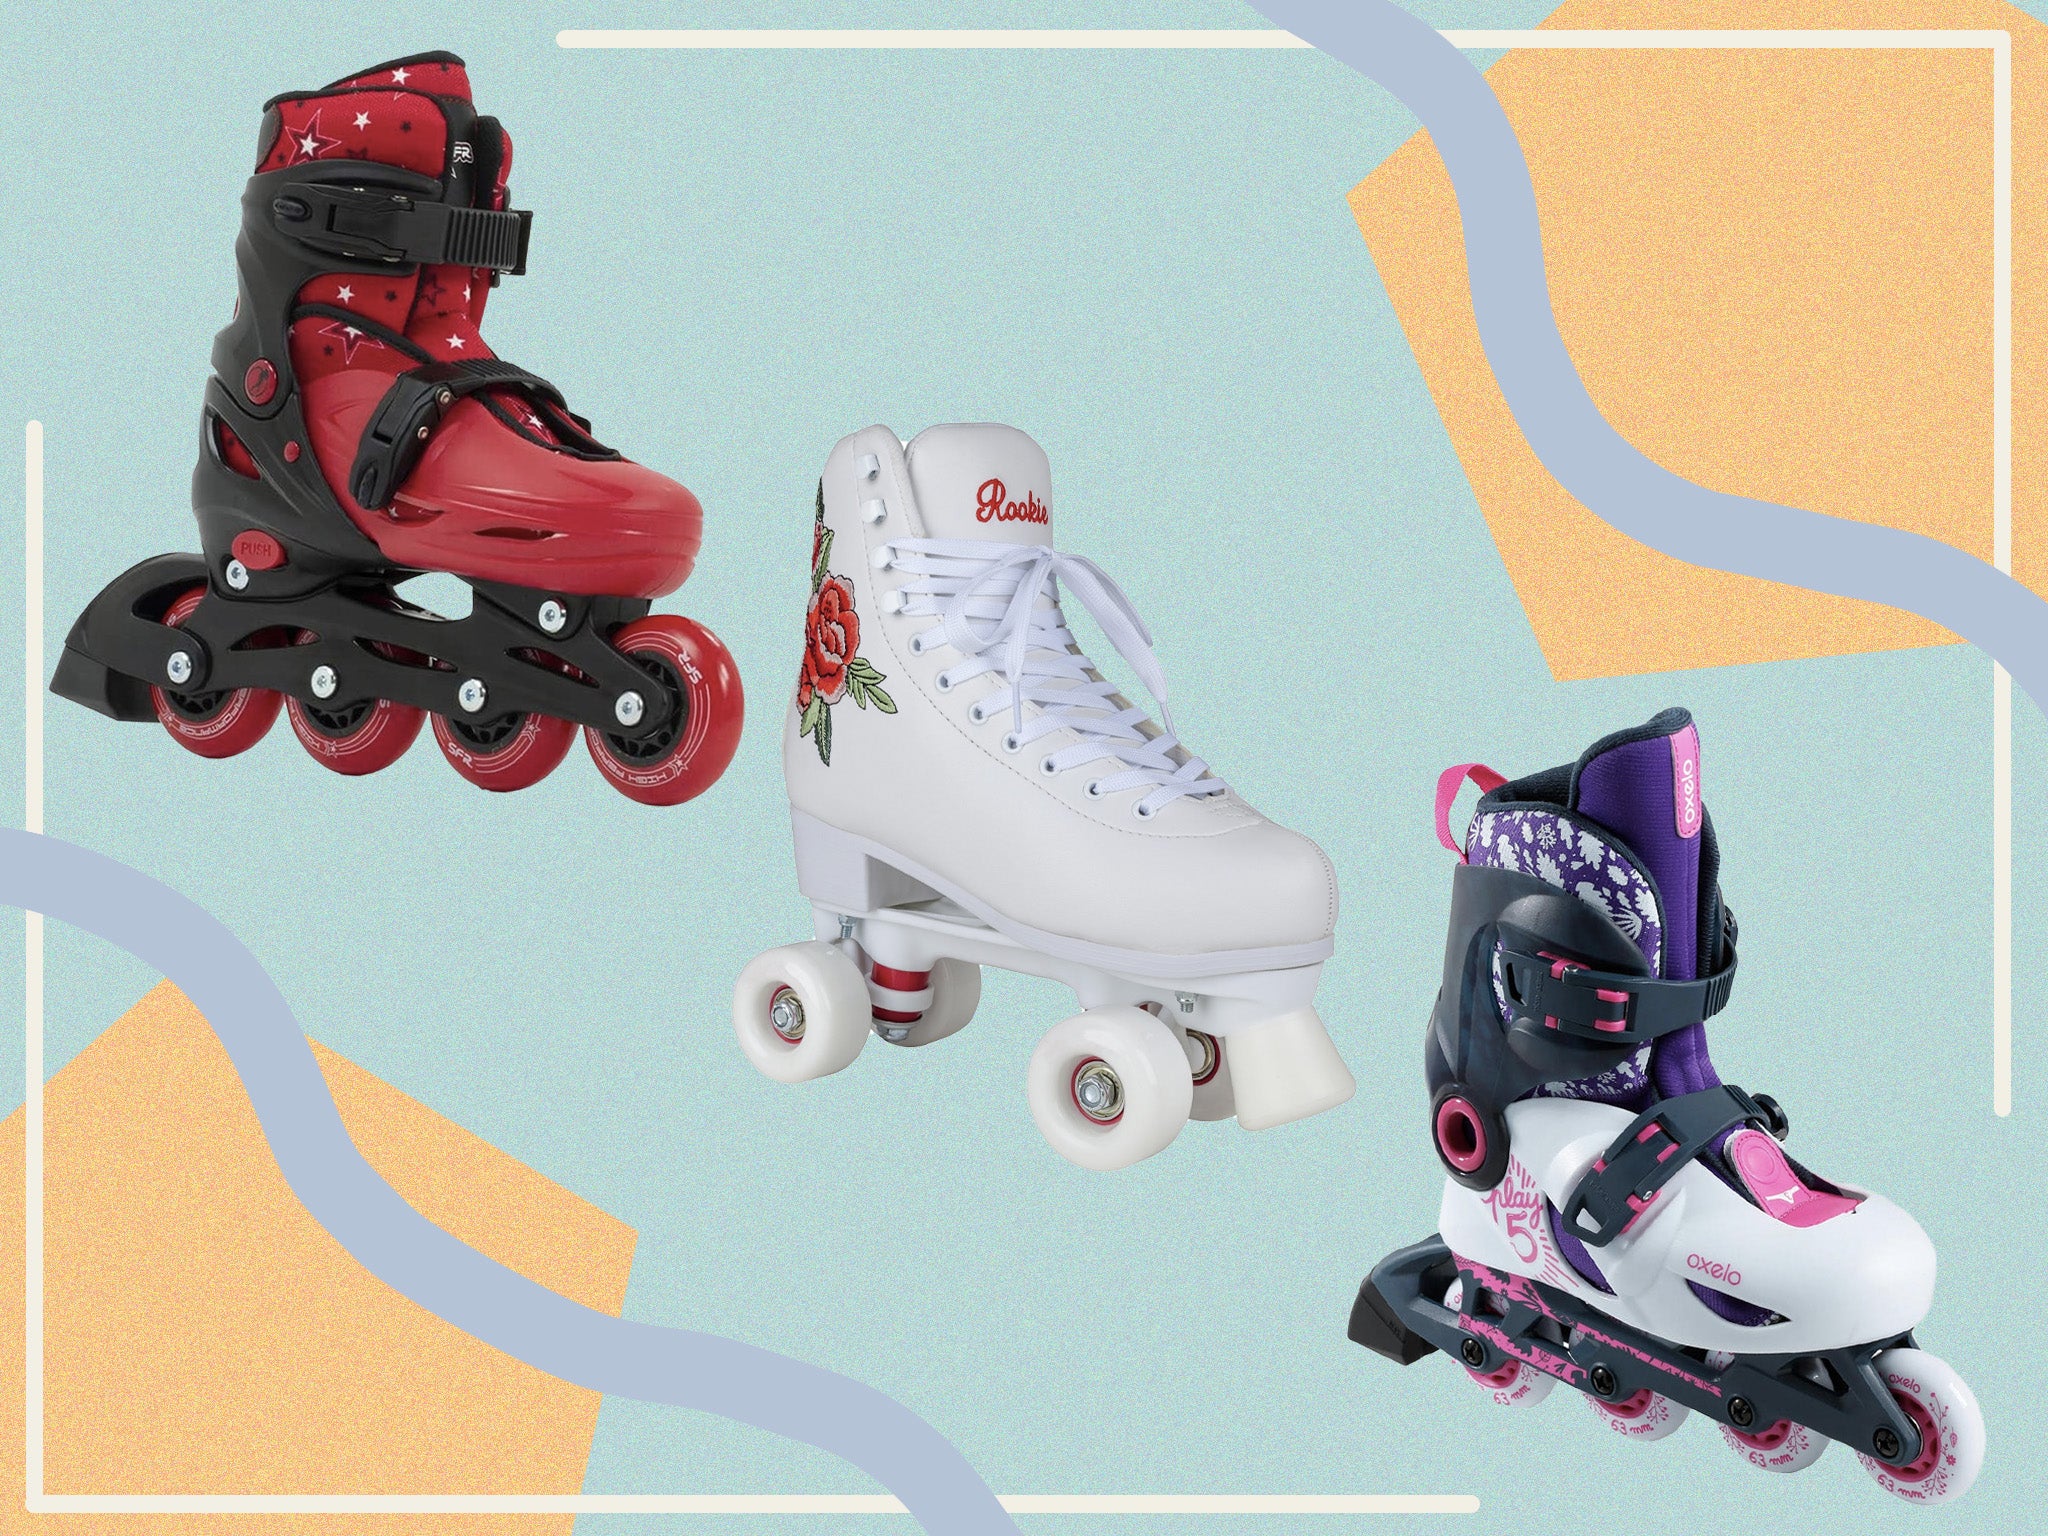 Rookie Blossom Blue Adjustable Kids Artistic Quad Roller Skates 